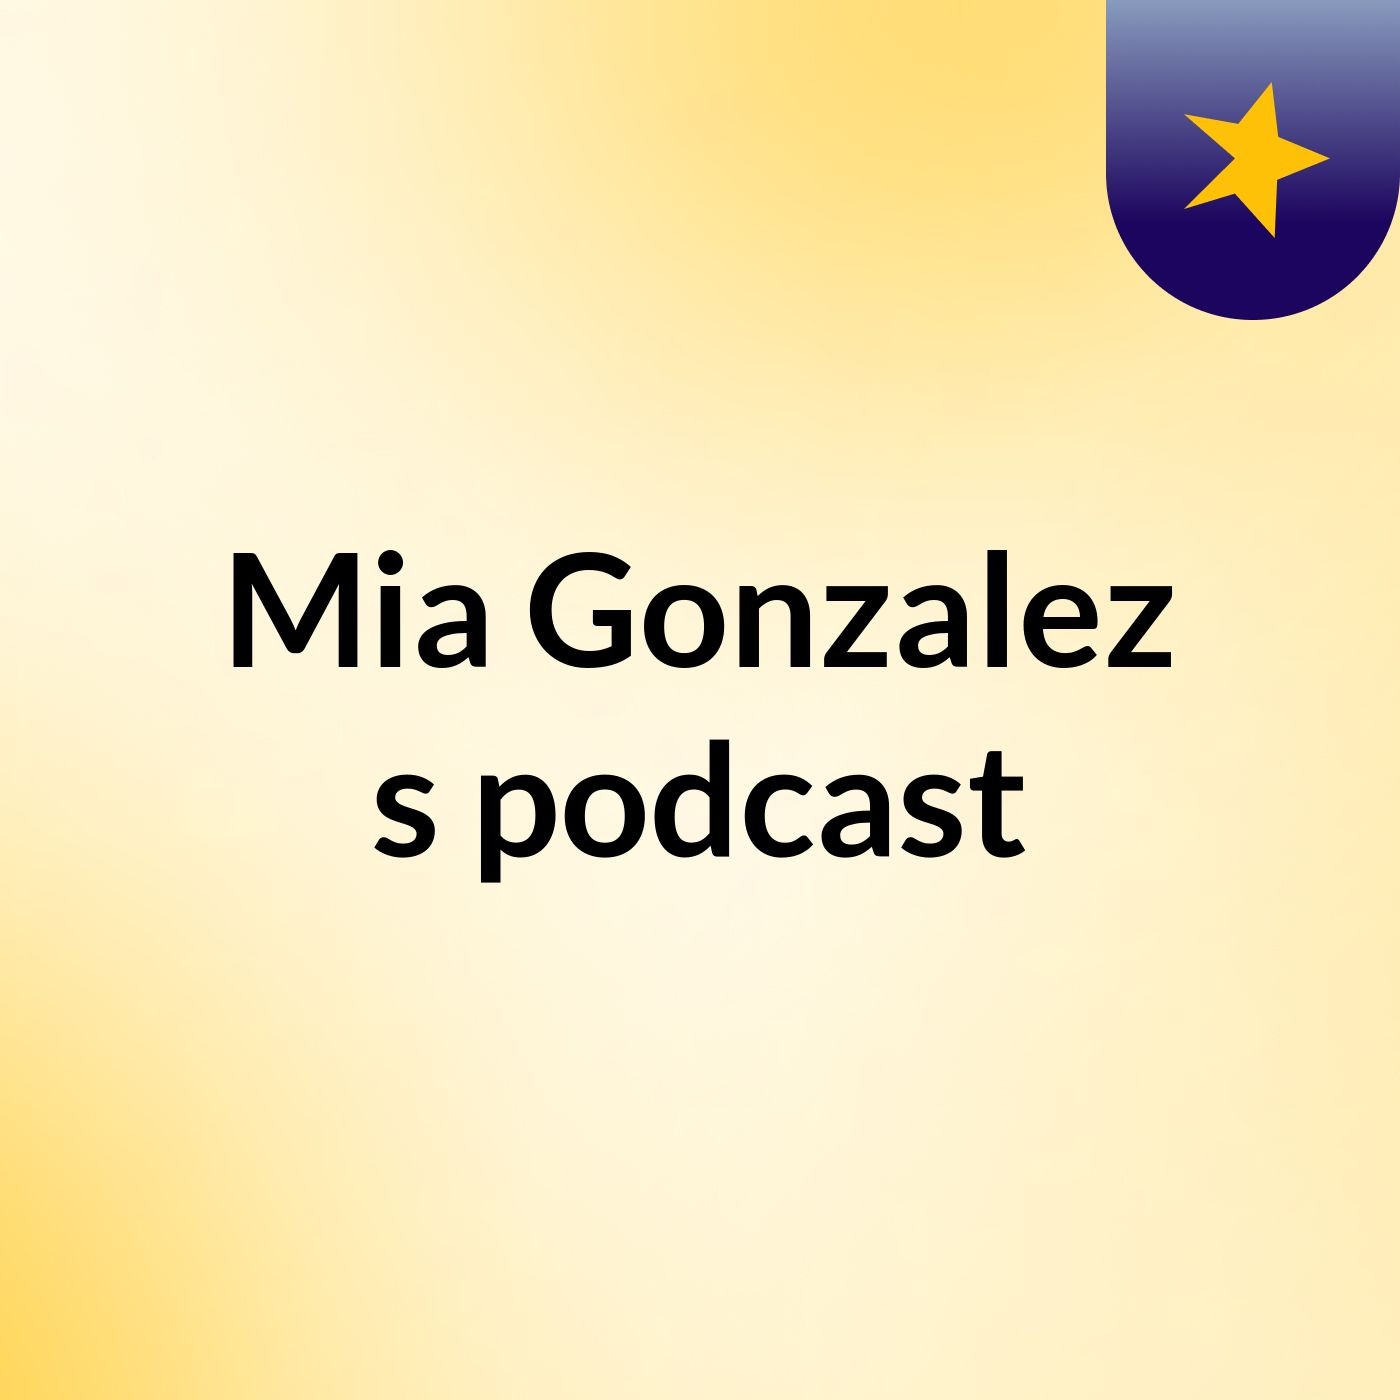 Mia Gonzalez's podcast